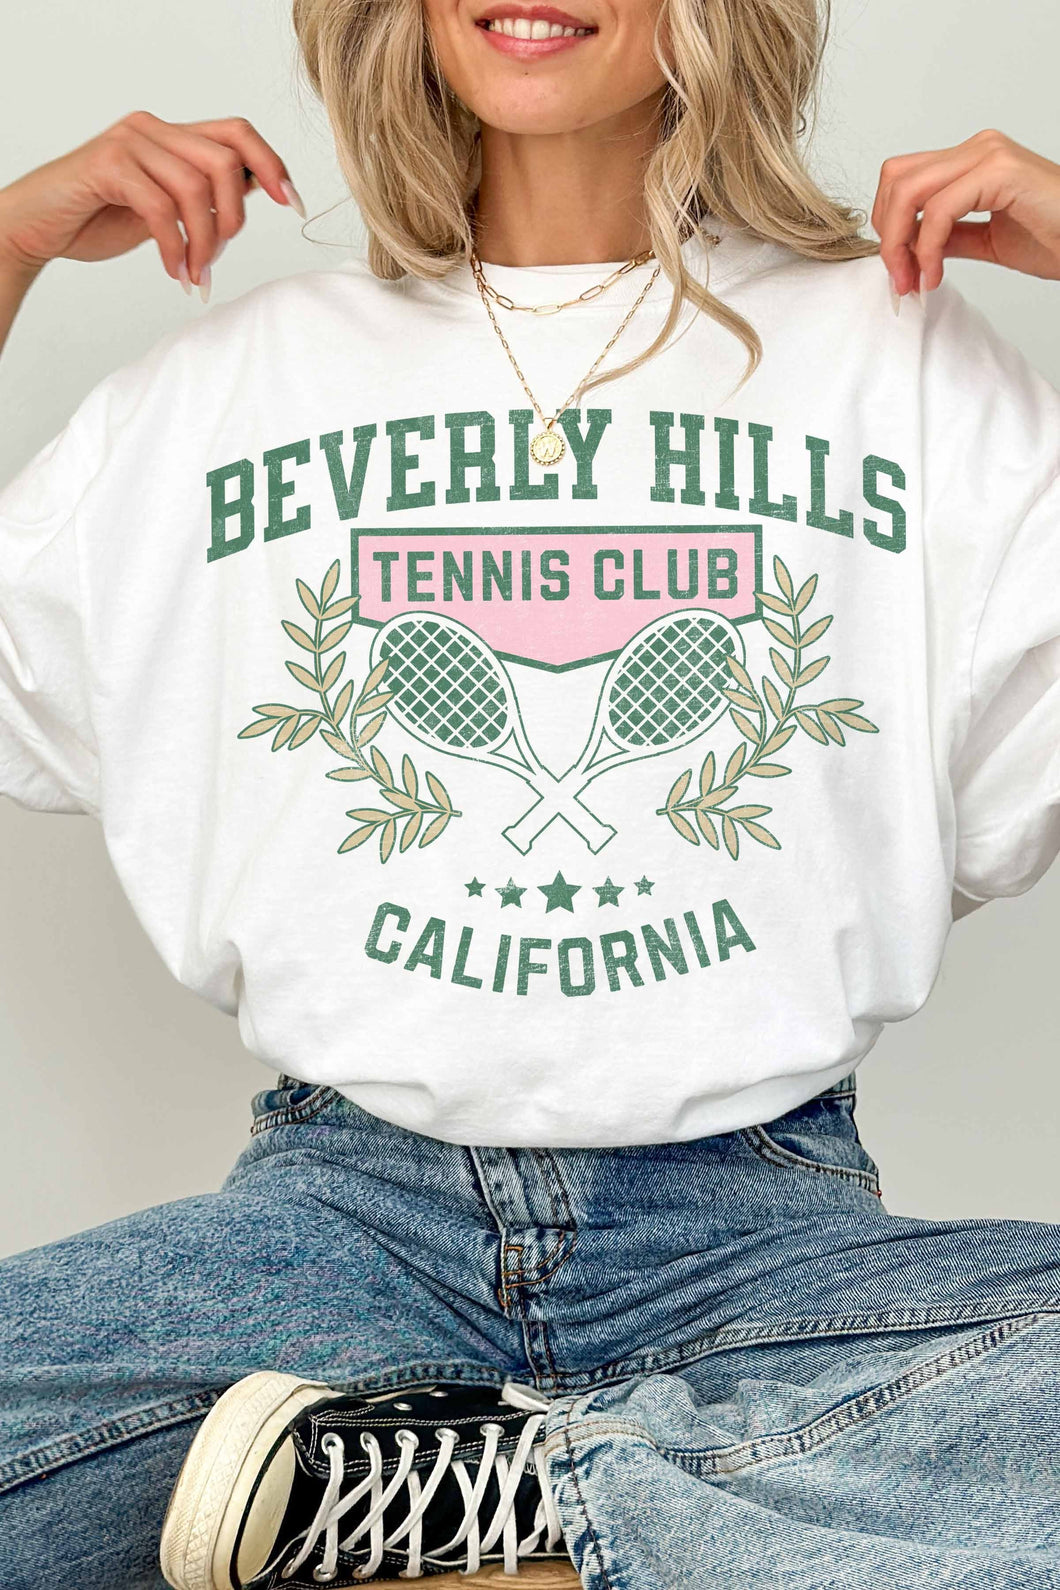 Tennis Club Sweatshirt